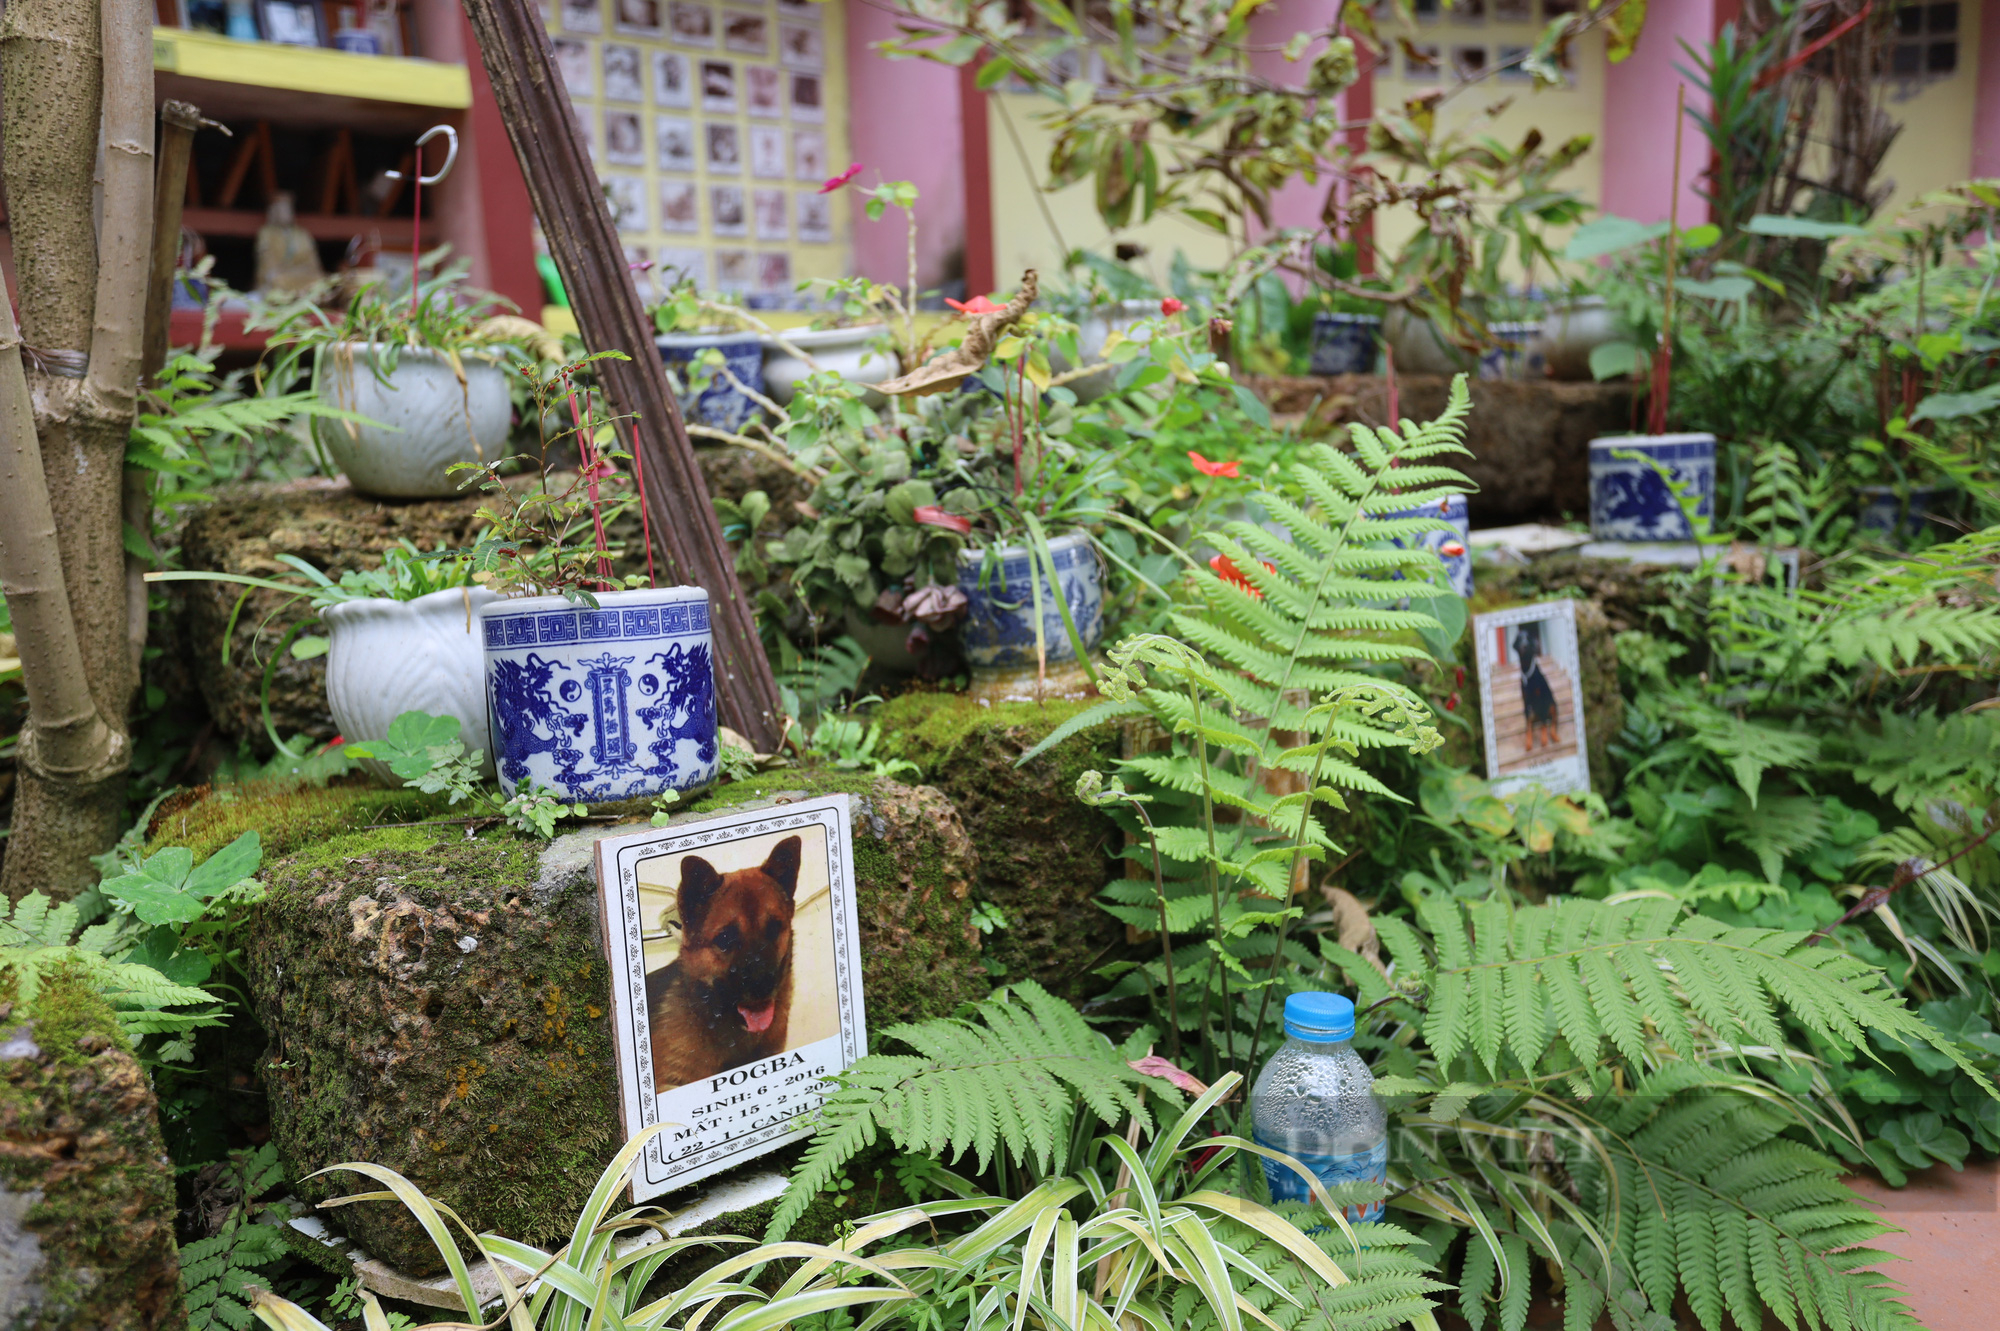 Nghĩa trang chó mèo ở Hà Nội: Chủ thú cưng tiết lộ “lí do đặc biệt” khi đưa thú cưng đi an táng - Ảnh 5.